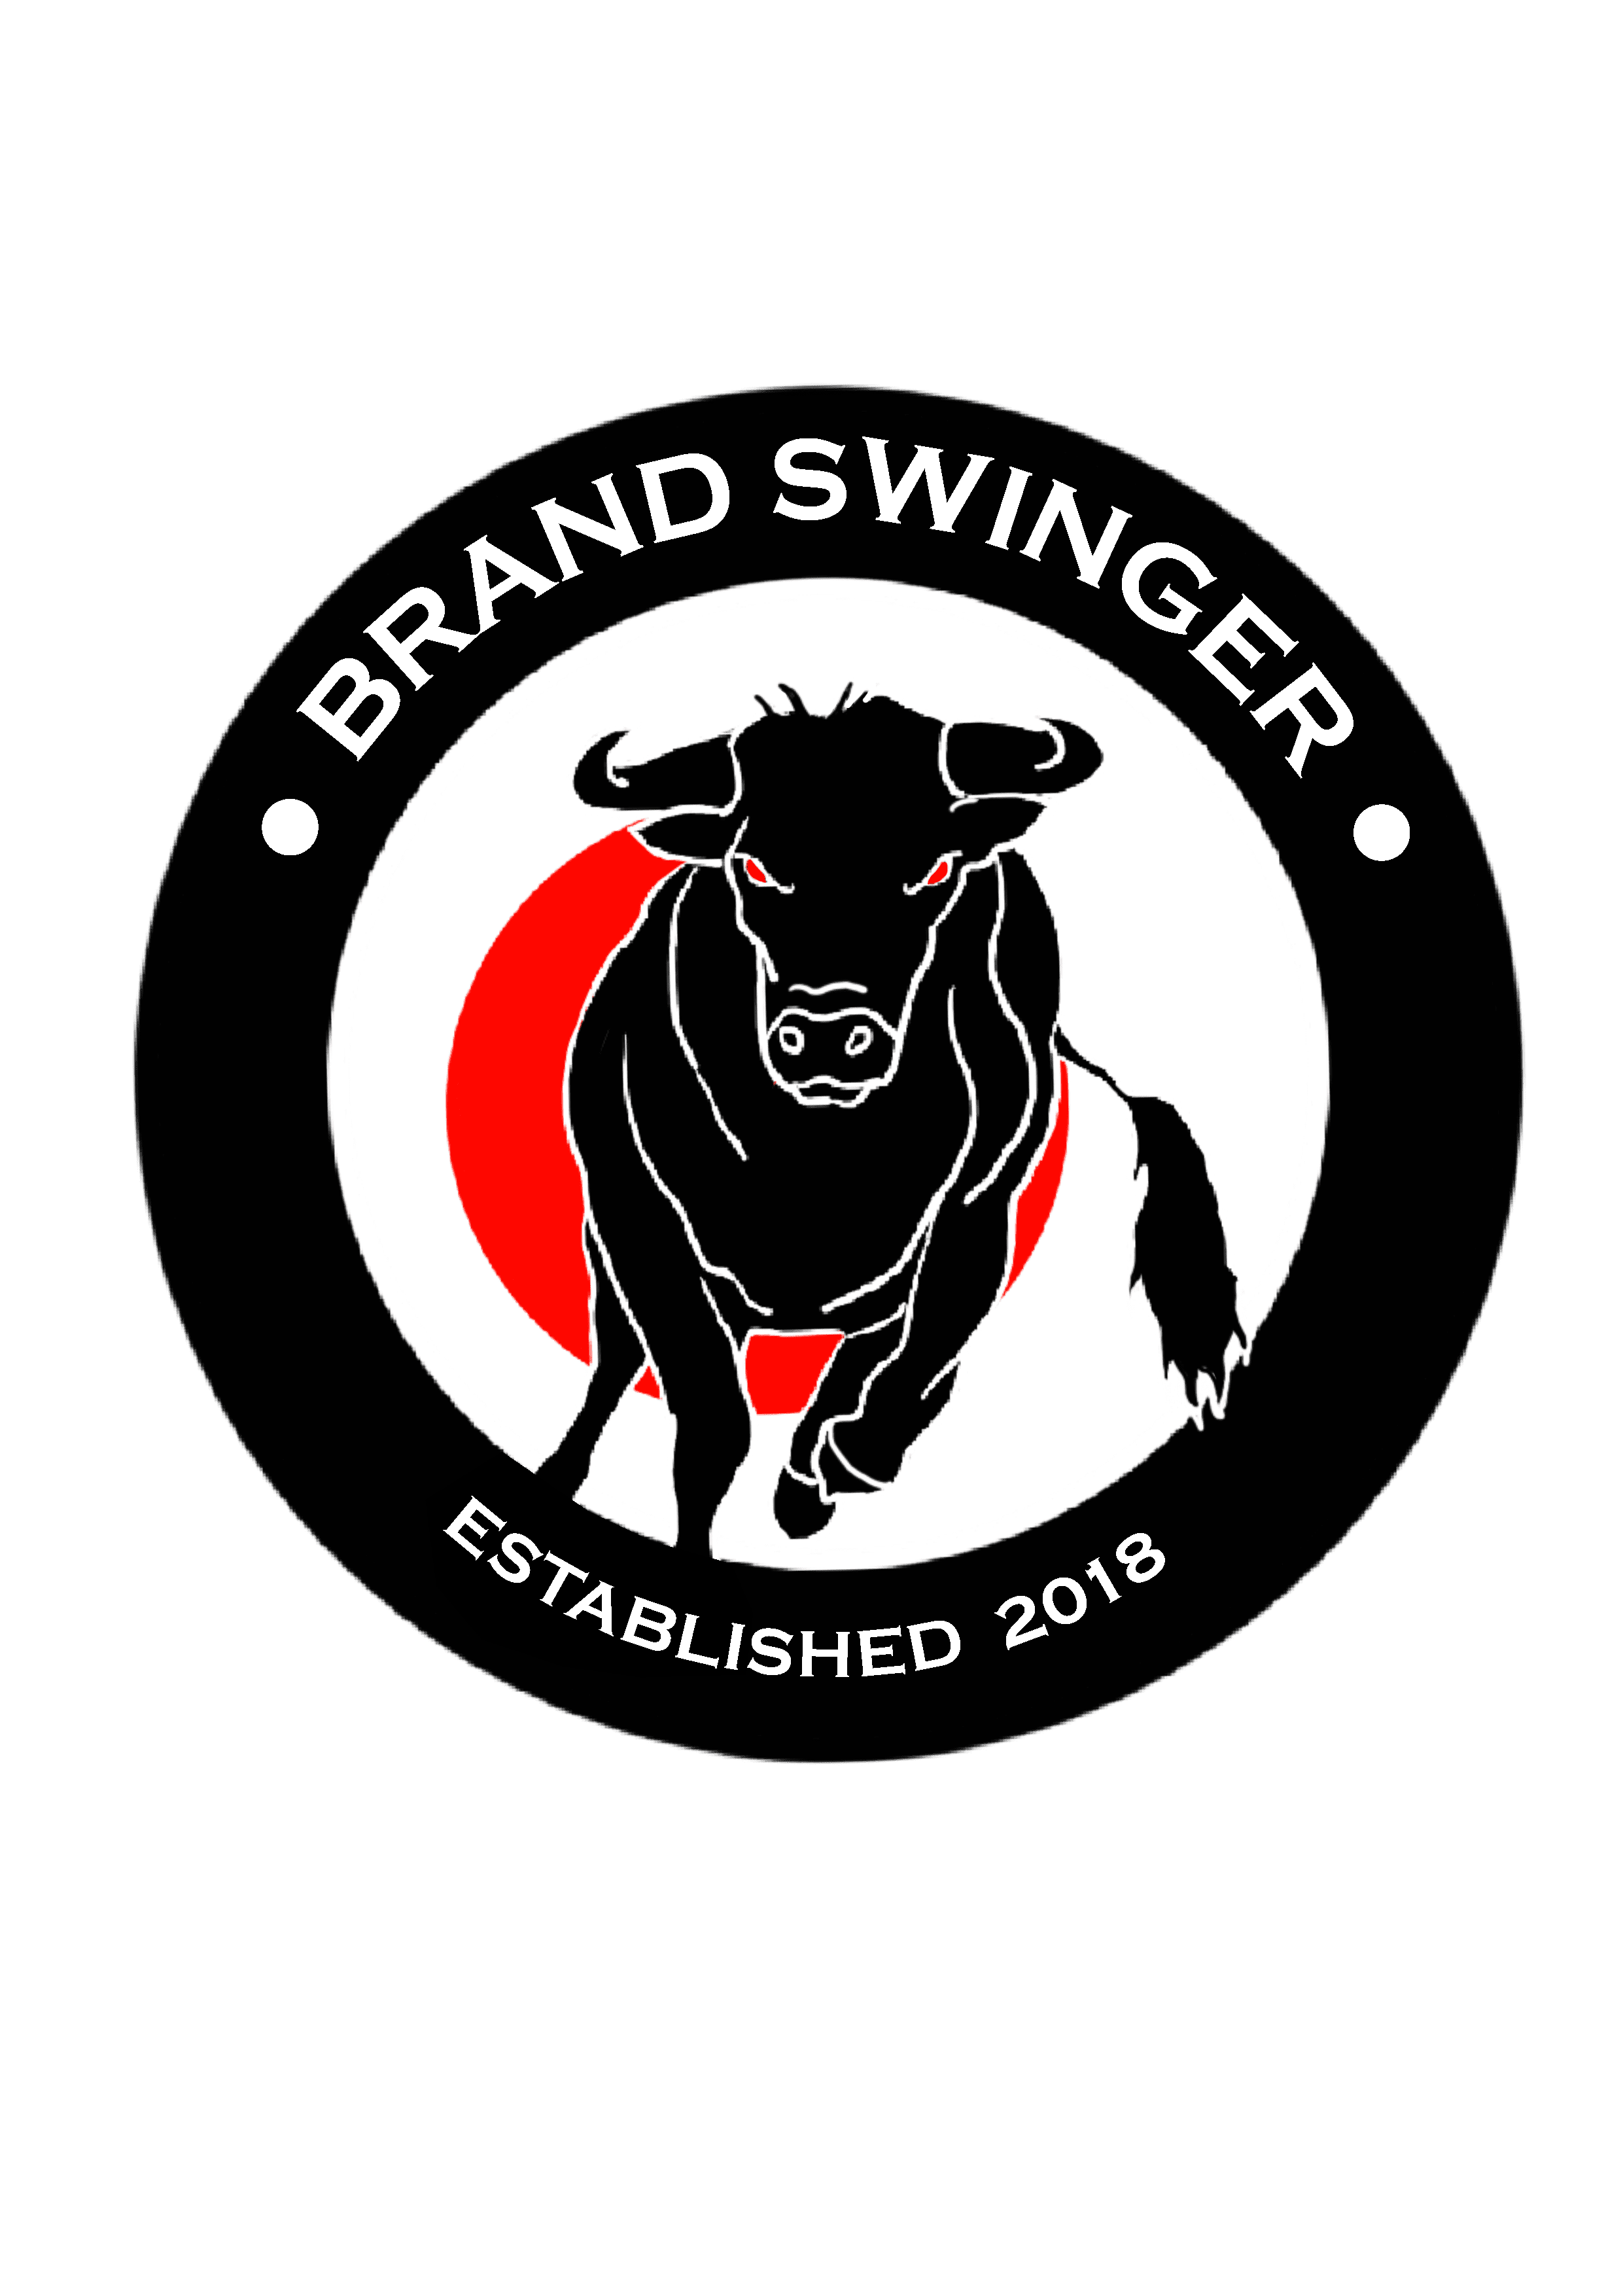 Brand Swinger